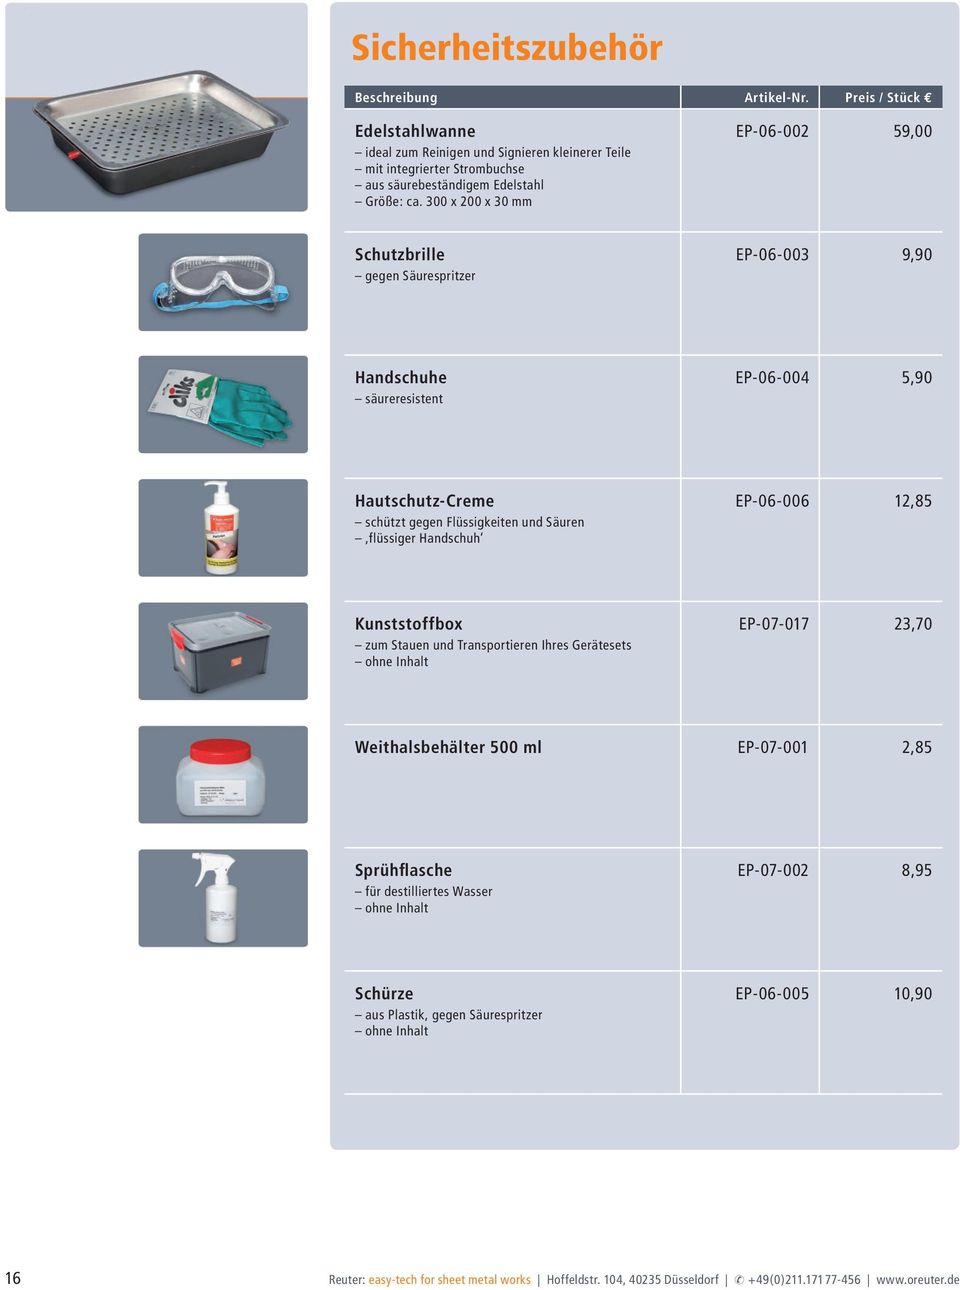 Handschuh EP-06-006 12,85 Kunststoffbox zum Stauen und Transportieren Ihres Gerätesets ohne Inhalt EP-07-017 23,70 Weithalsbehälter 500 ml EP-07-001 2,85 Sprühflasche für destilliertes Wasser